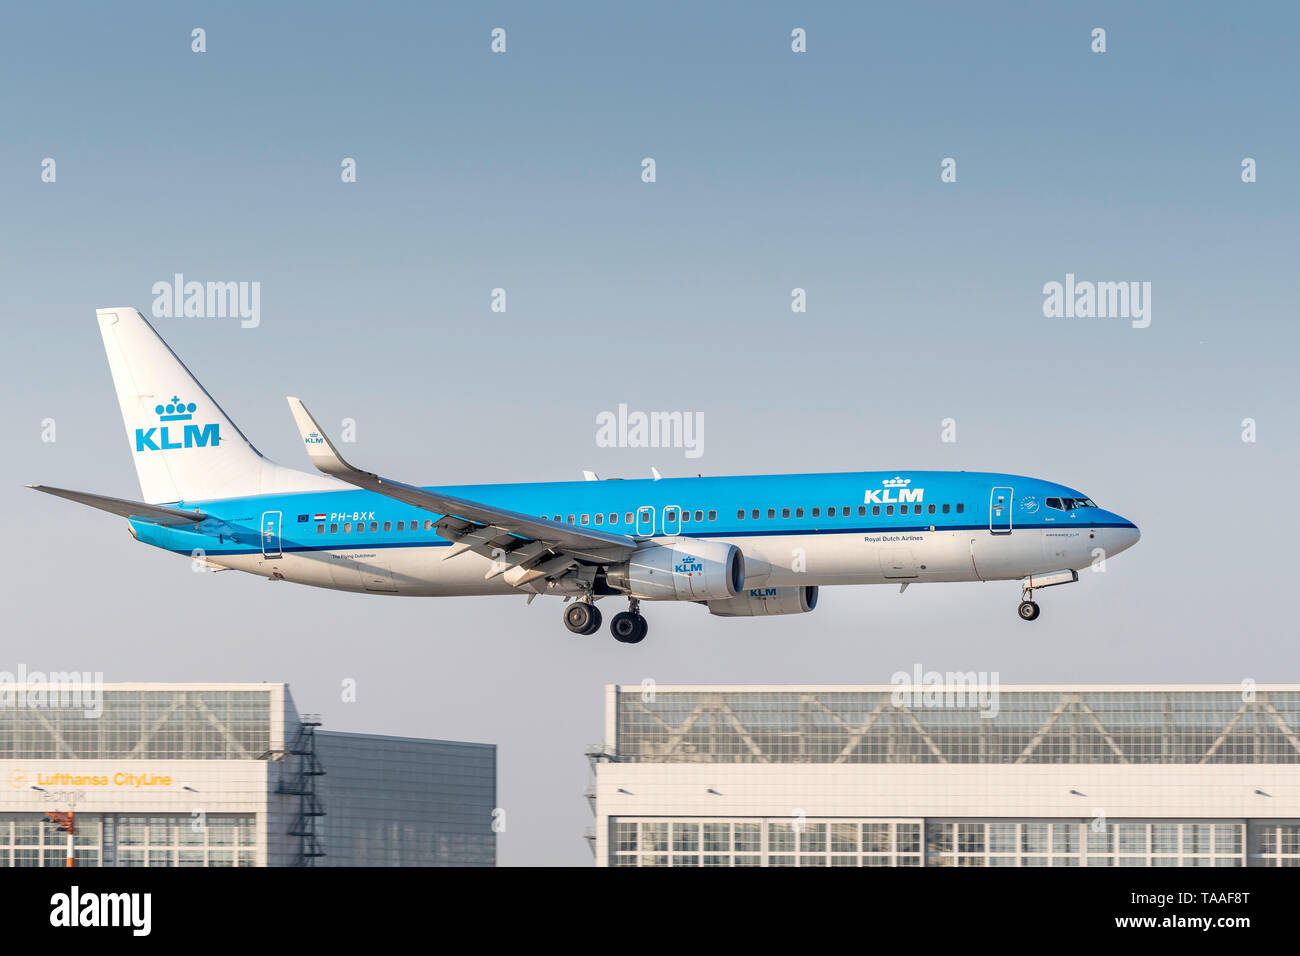 München, Deutschland - 17. Oktober 2018: KLM Boeing 737-8 K2 Mit dem Flugzeug Registrierung BH-Bxk in der Annäherung an die südliche Start- und Landebahn des Münchner Luft Stockfoto